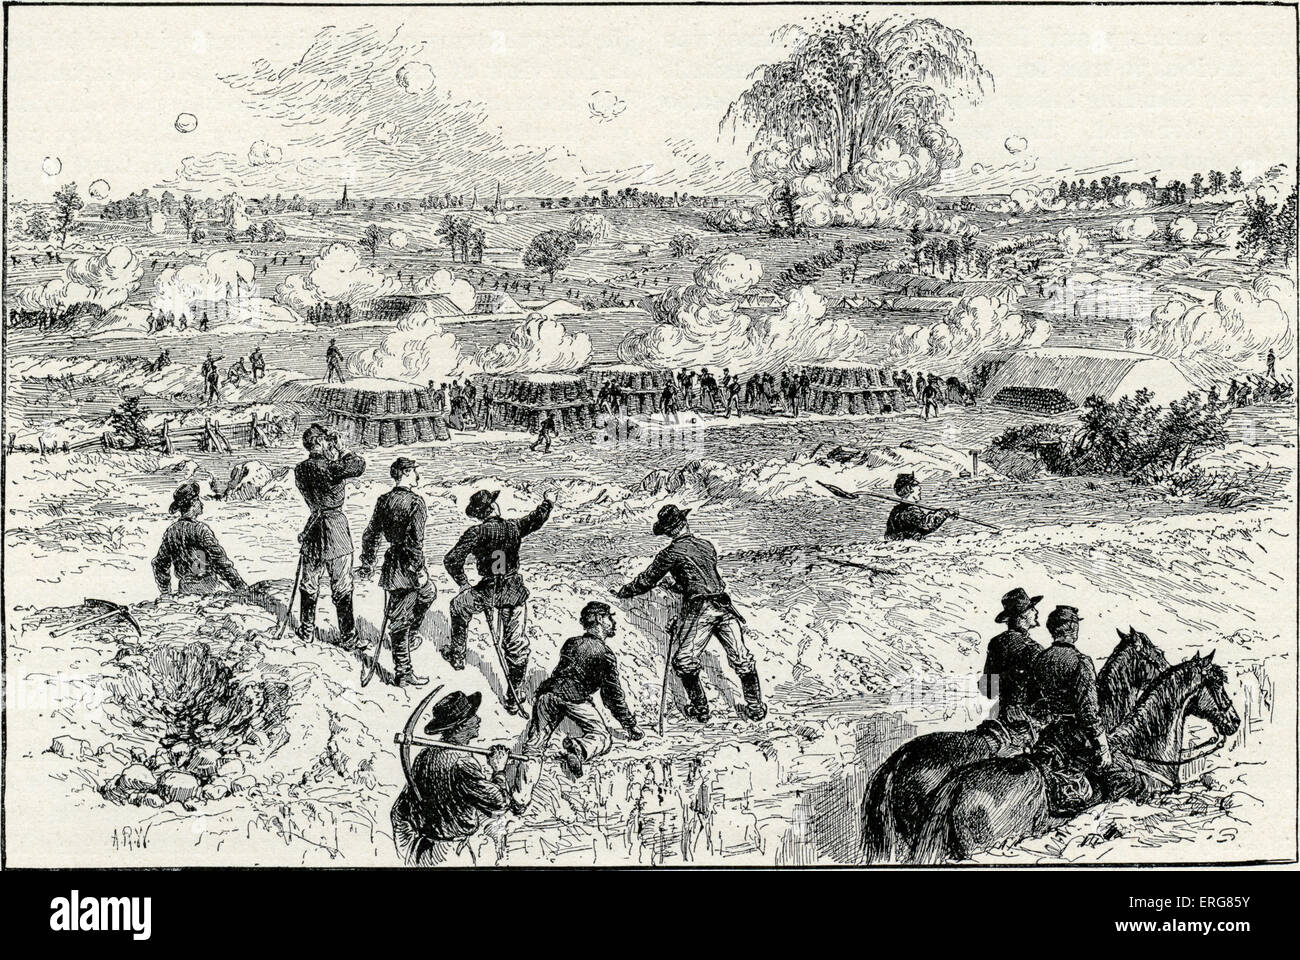 La battaglia del Cratere, Guerra civile americana - esplosione della miniera. Il 30 luglio 1864, le truppe della Federazione è esplosa una miniera in Foto Stock